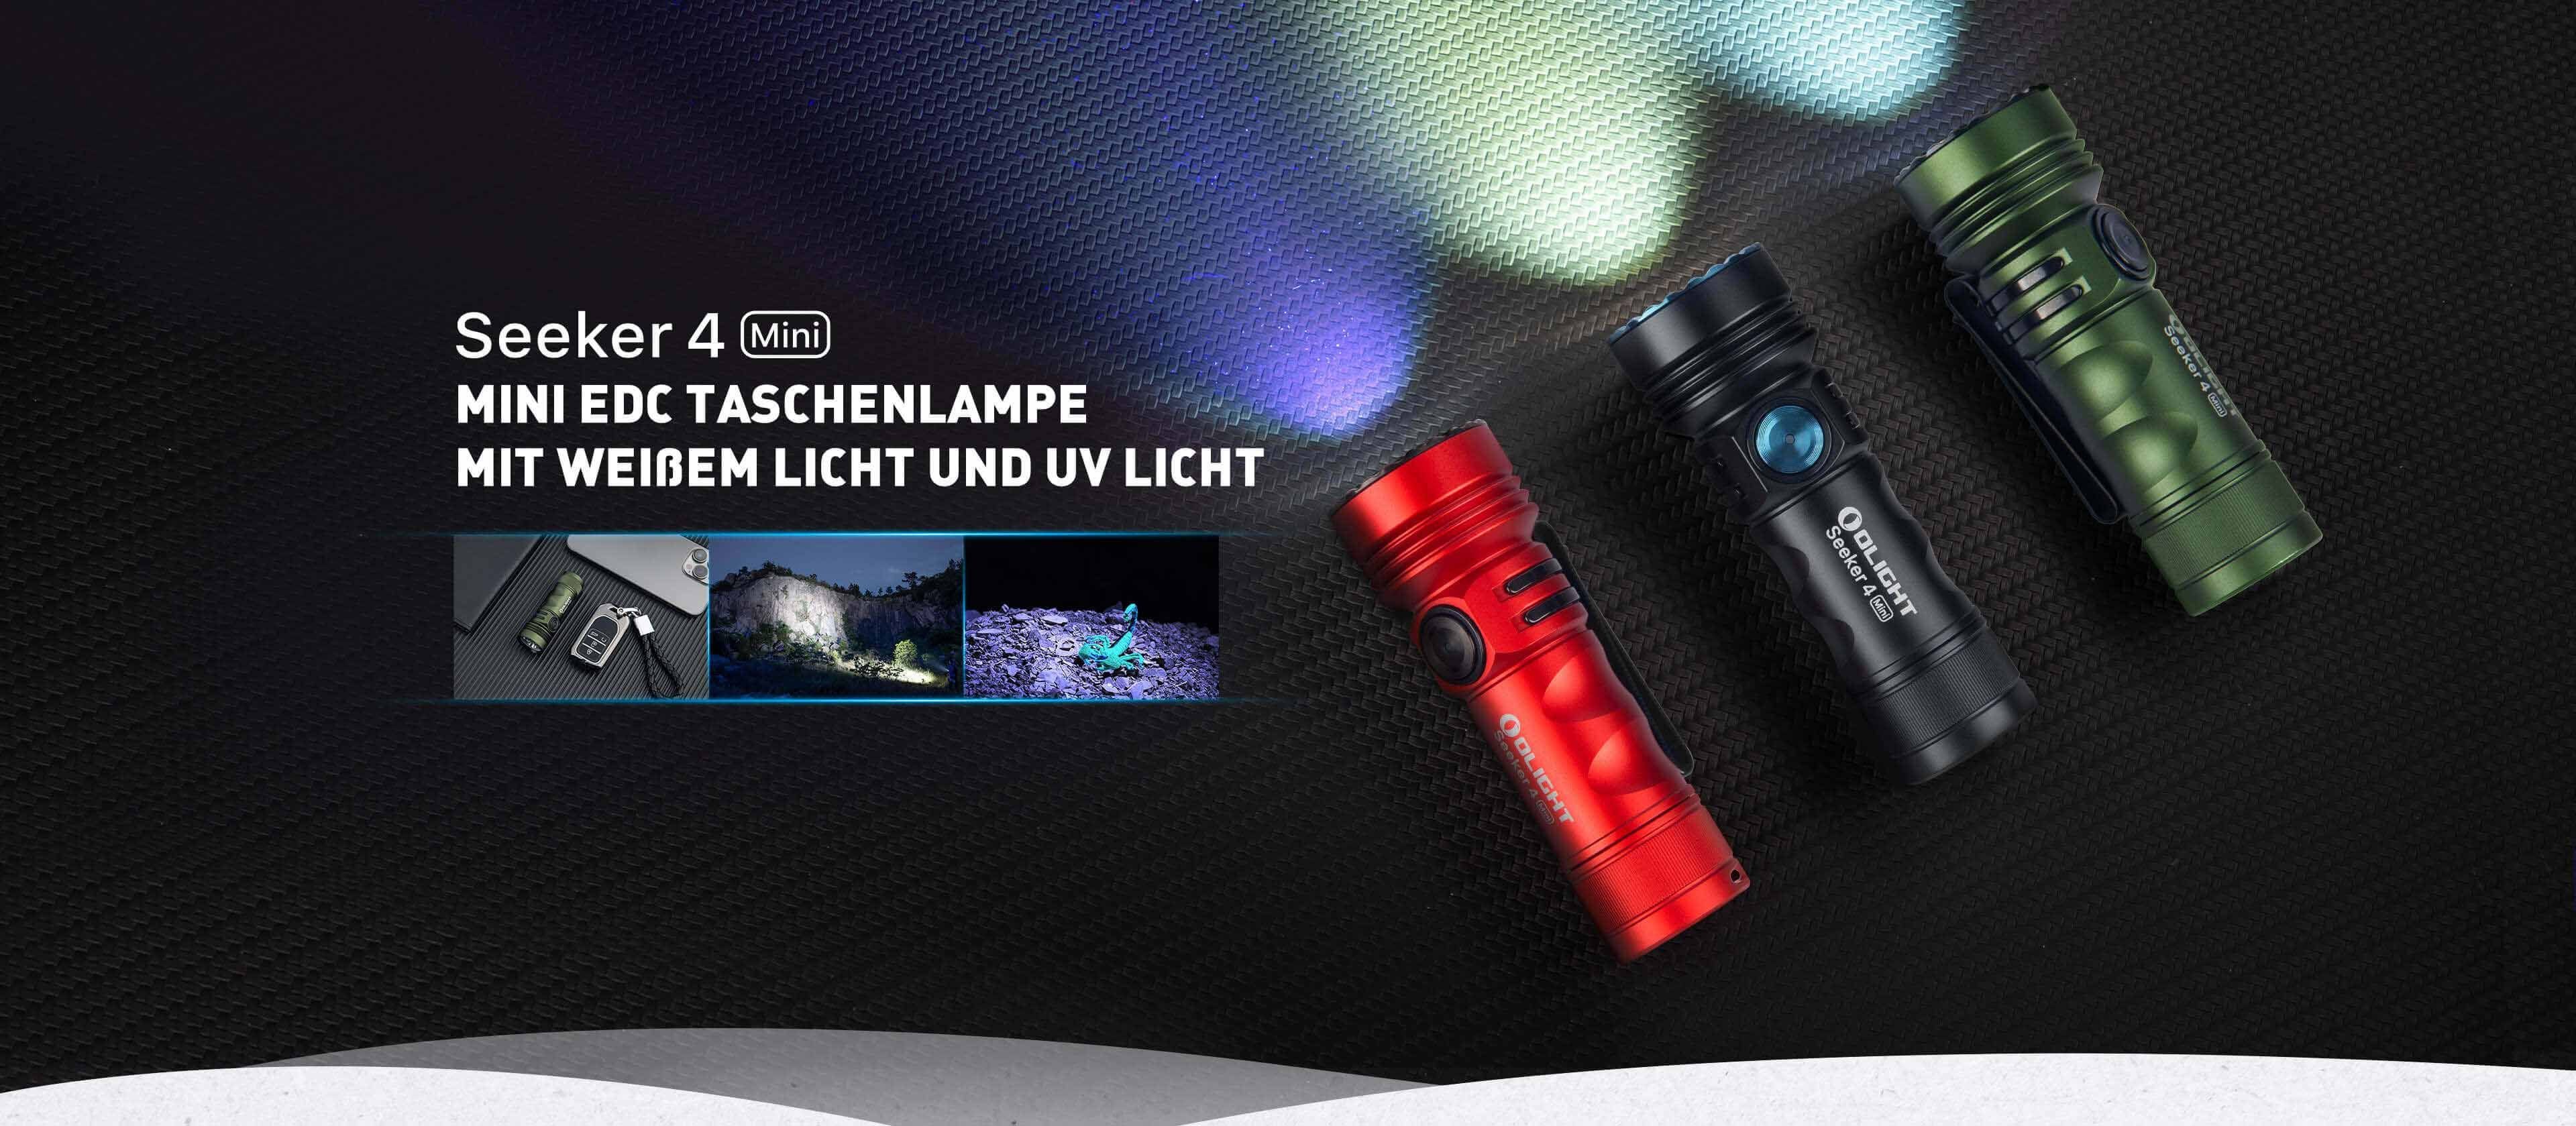 Seeker 4 OLIGHT Taschenlampe Taschenlampe Olight mit dualer Rot LED Lichtquelle Mini